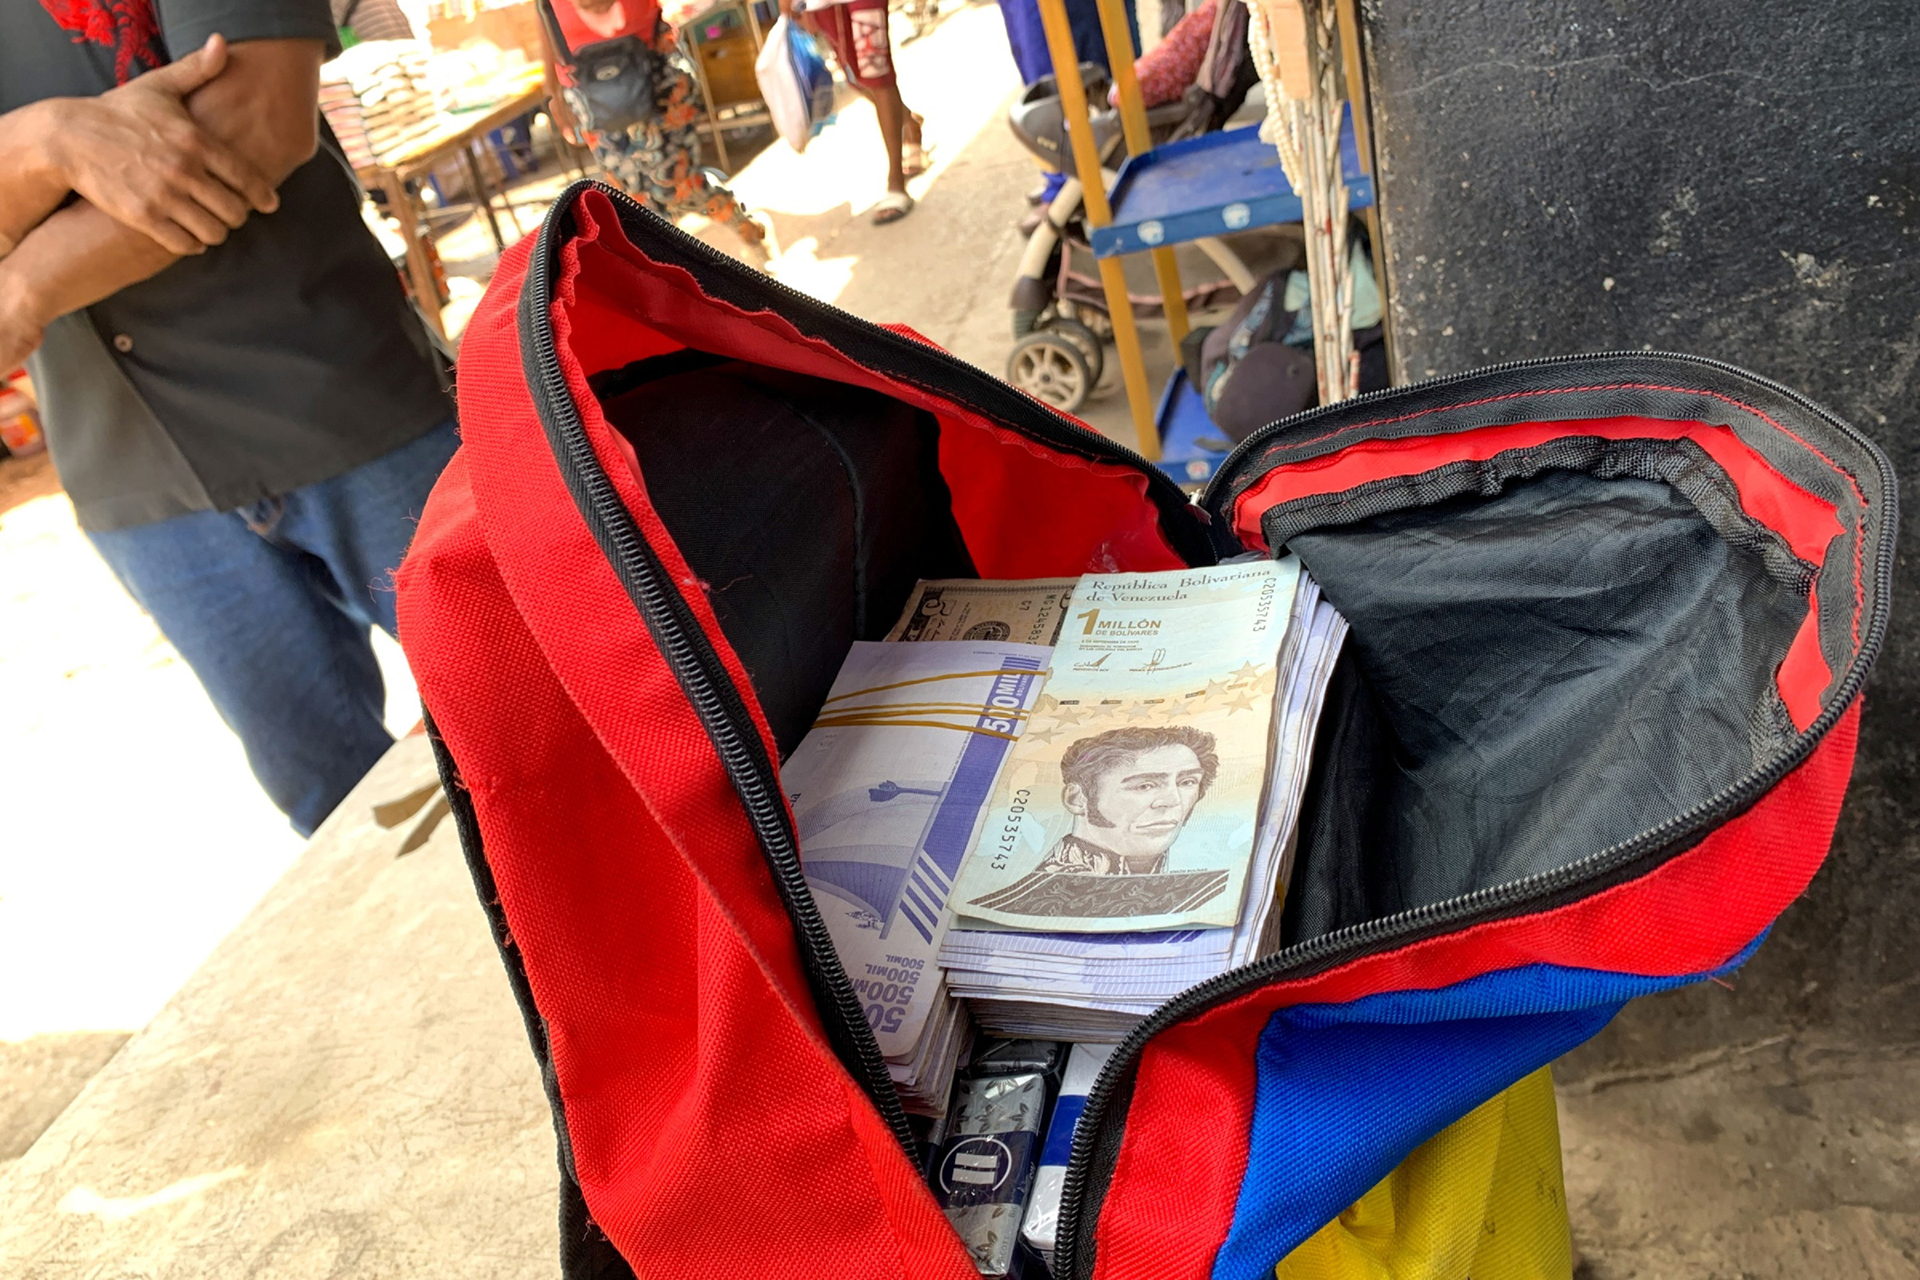 Un vendedor ambulante con una mochila de bolívares venezolanos es visto en un mercado público en Puerto la Cruz, Venezuela, el 14 de octubre de 2021. (Bloomberg por Manaure Quintero)